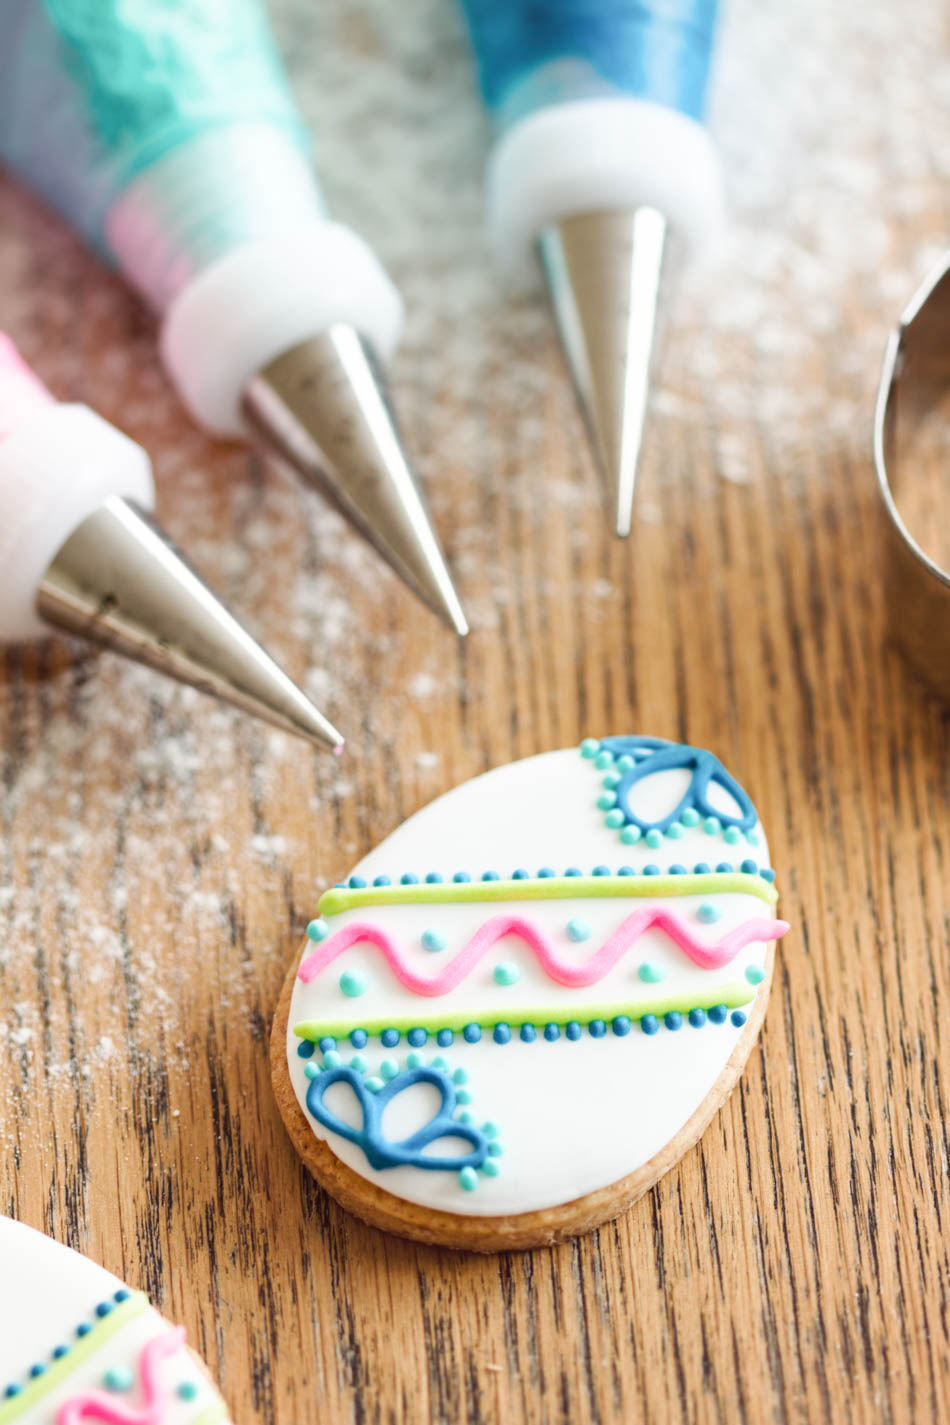 Aprenda como fazer biscoitos decorados de Páscoa em casa com essa receita simples e divertida. Encante seus amigos e familiares com esses doces deliciosos e coloridos.